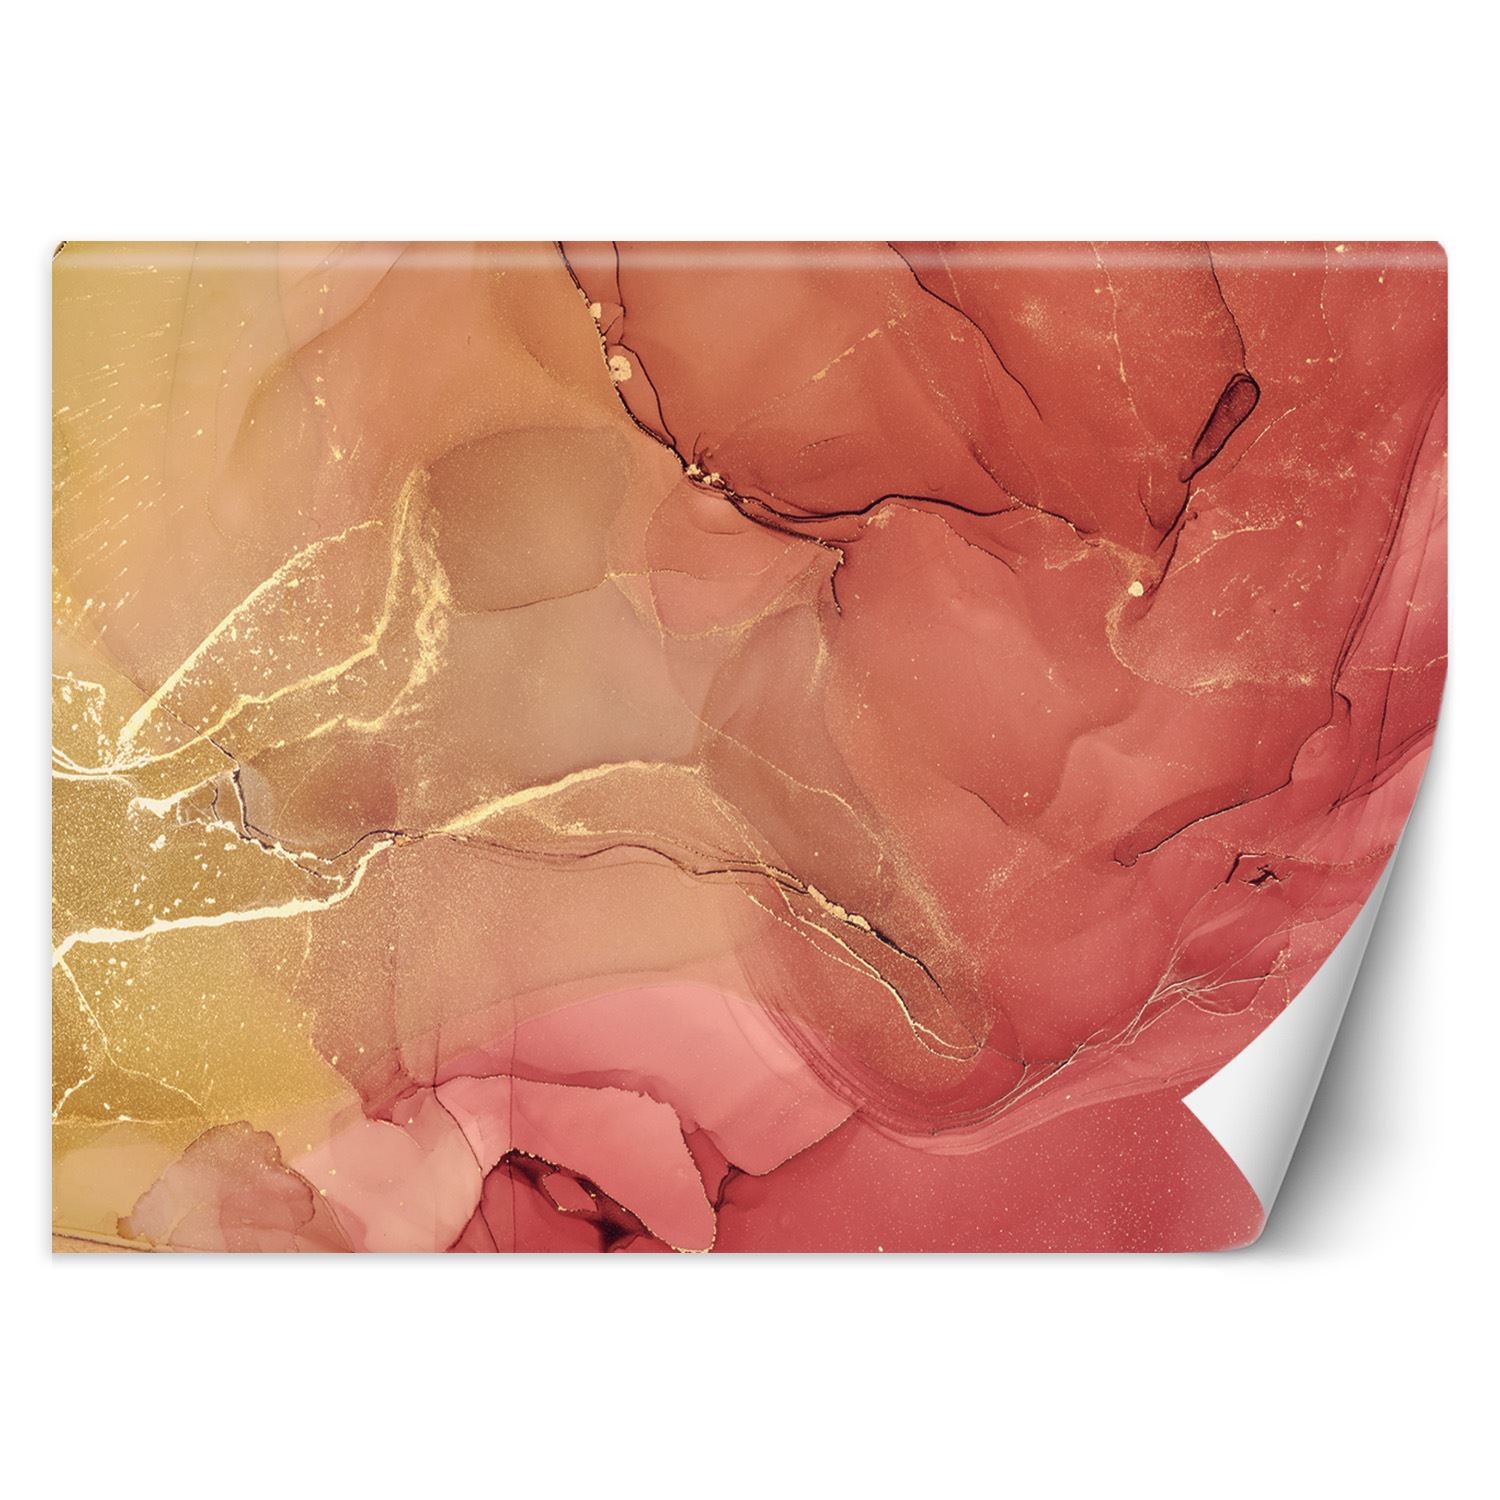 Trend24 – Behang – Abstract In Delicate Roze – Vliesbehang – Fotobehang 3D – Behang Woonkamer – 450x315x2 cm – Incl. behanglijm